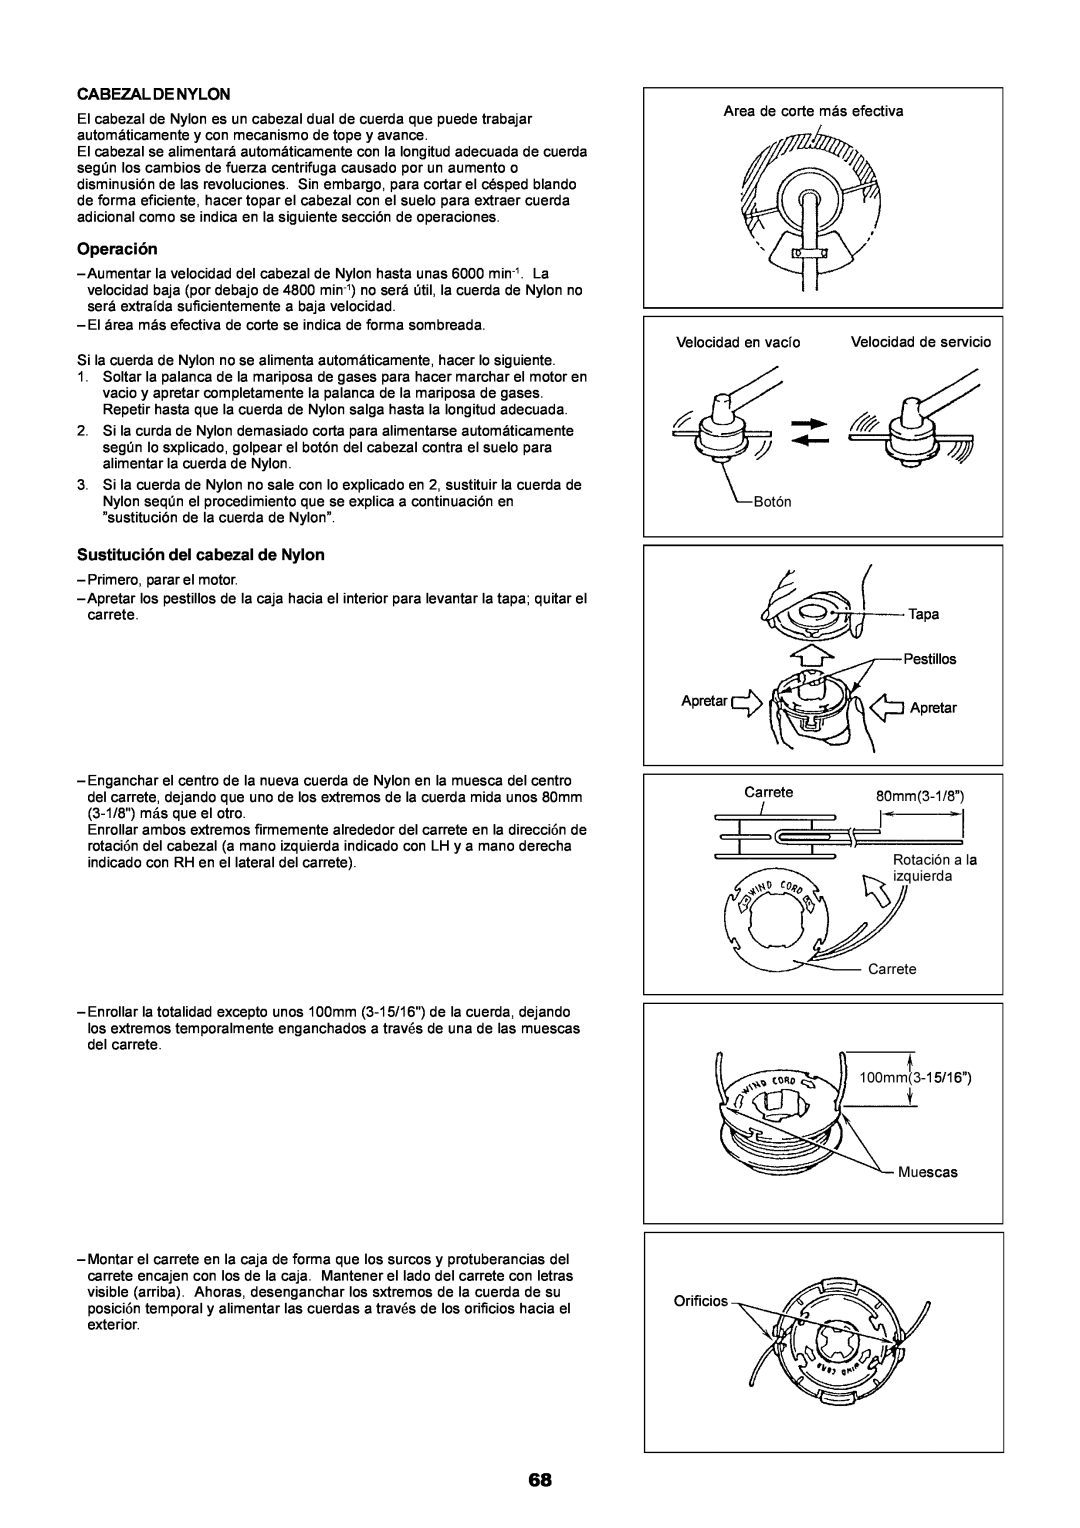 Dolmar MS-251.4, MS-250.4 instruction manual Cabezaldenylon, Operación, Sustitución del cabezal de Nylon 